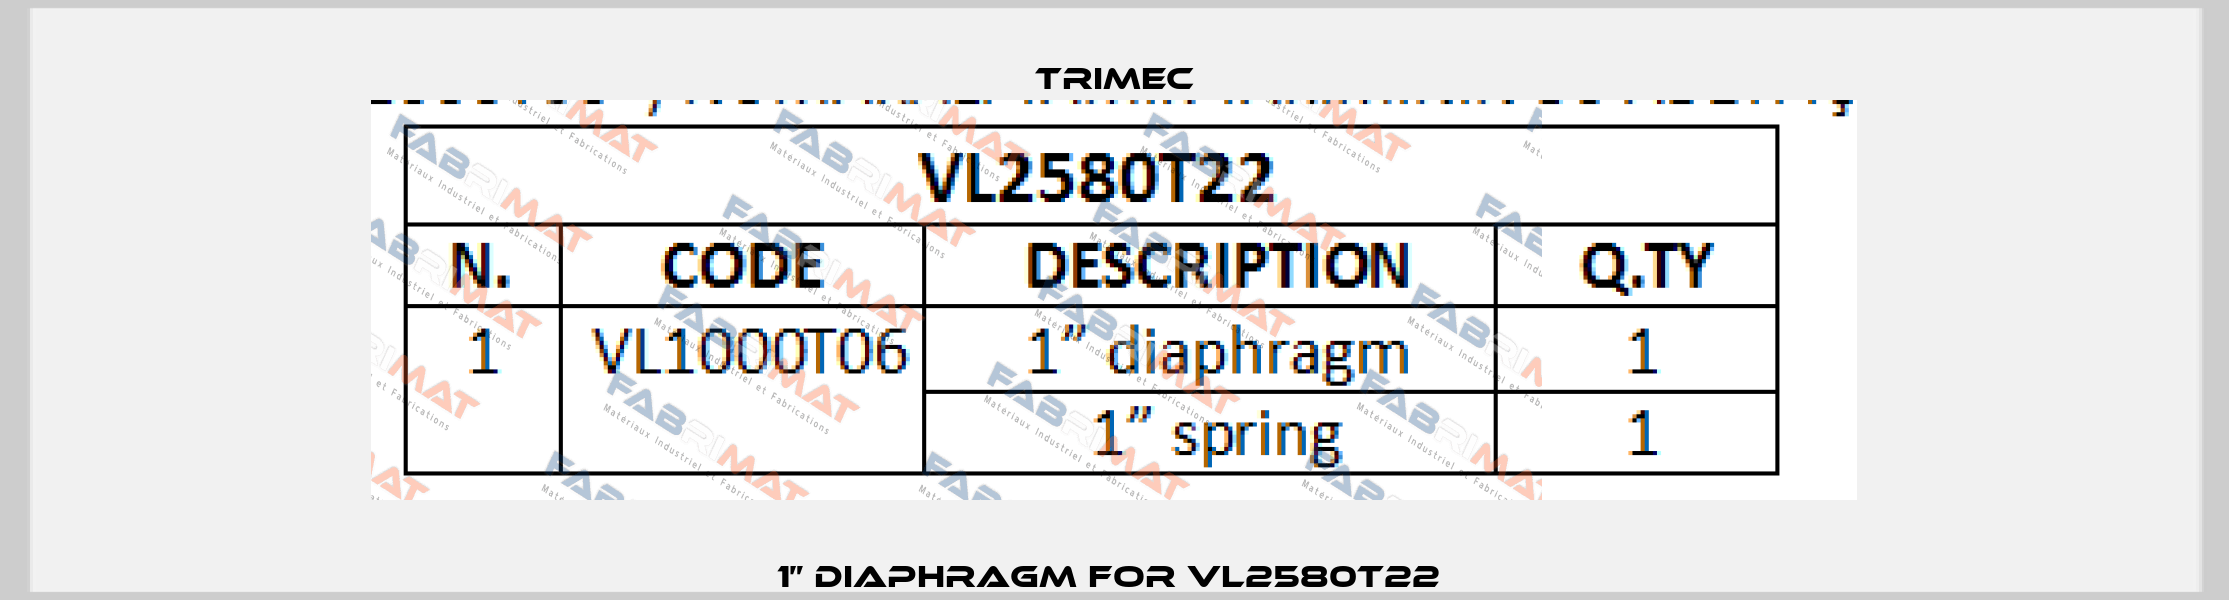 1” diaphragm For VL2580T22  Trimec